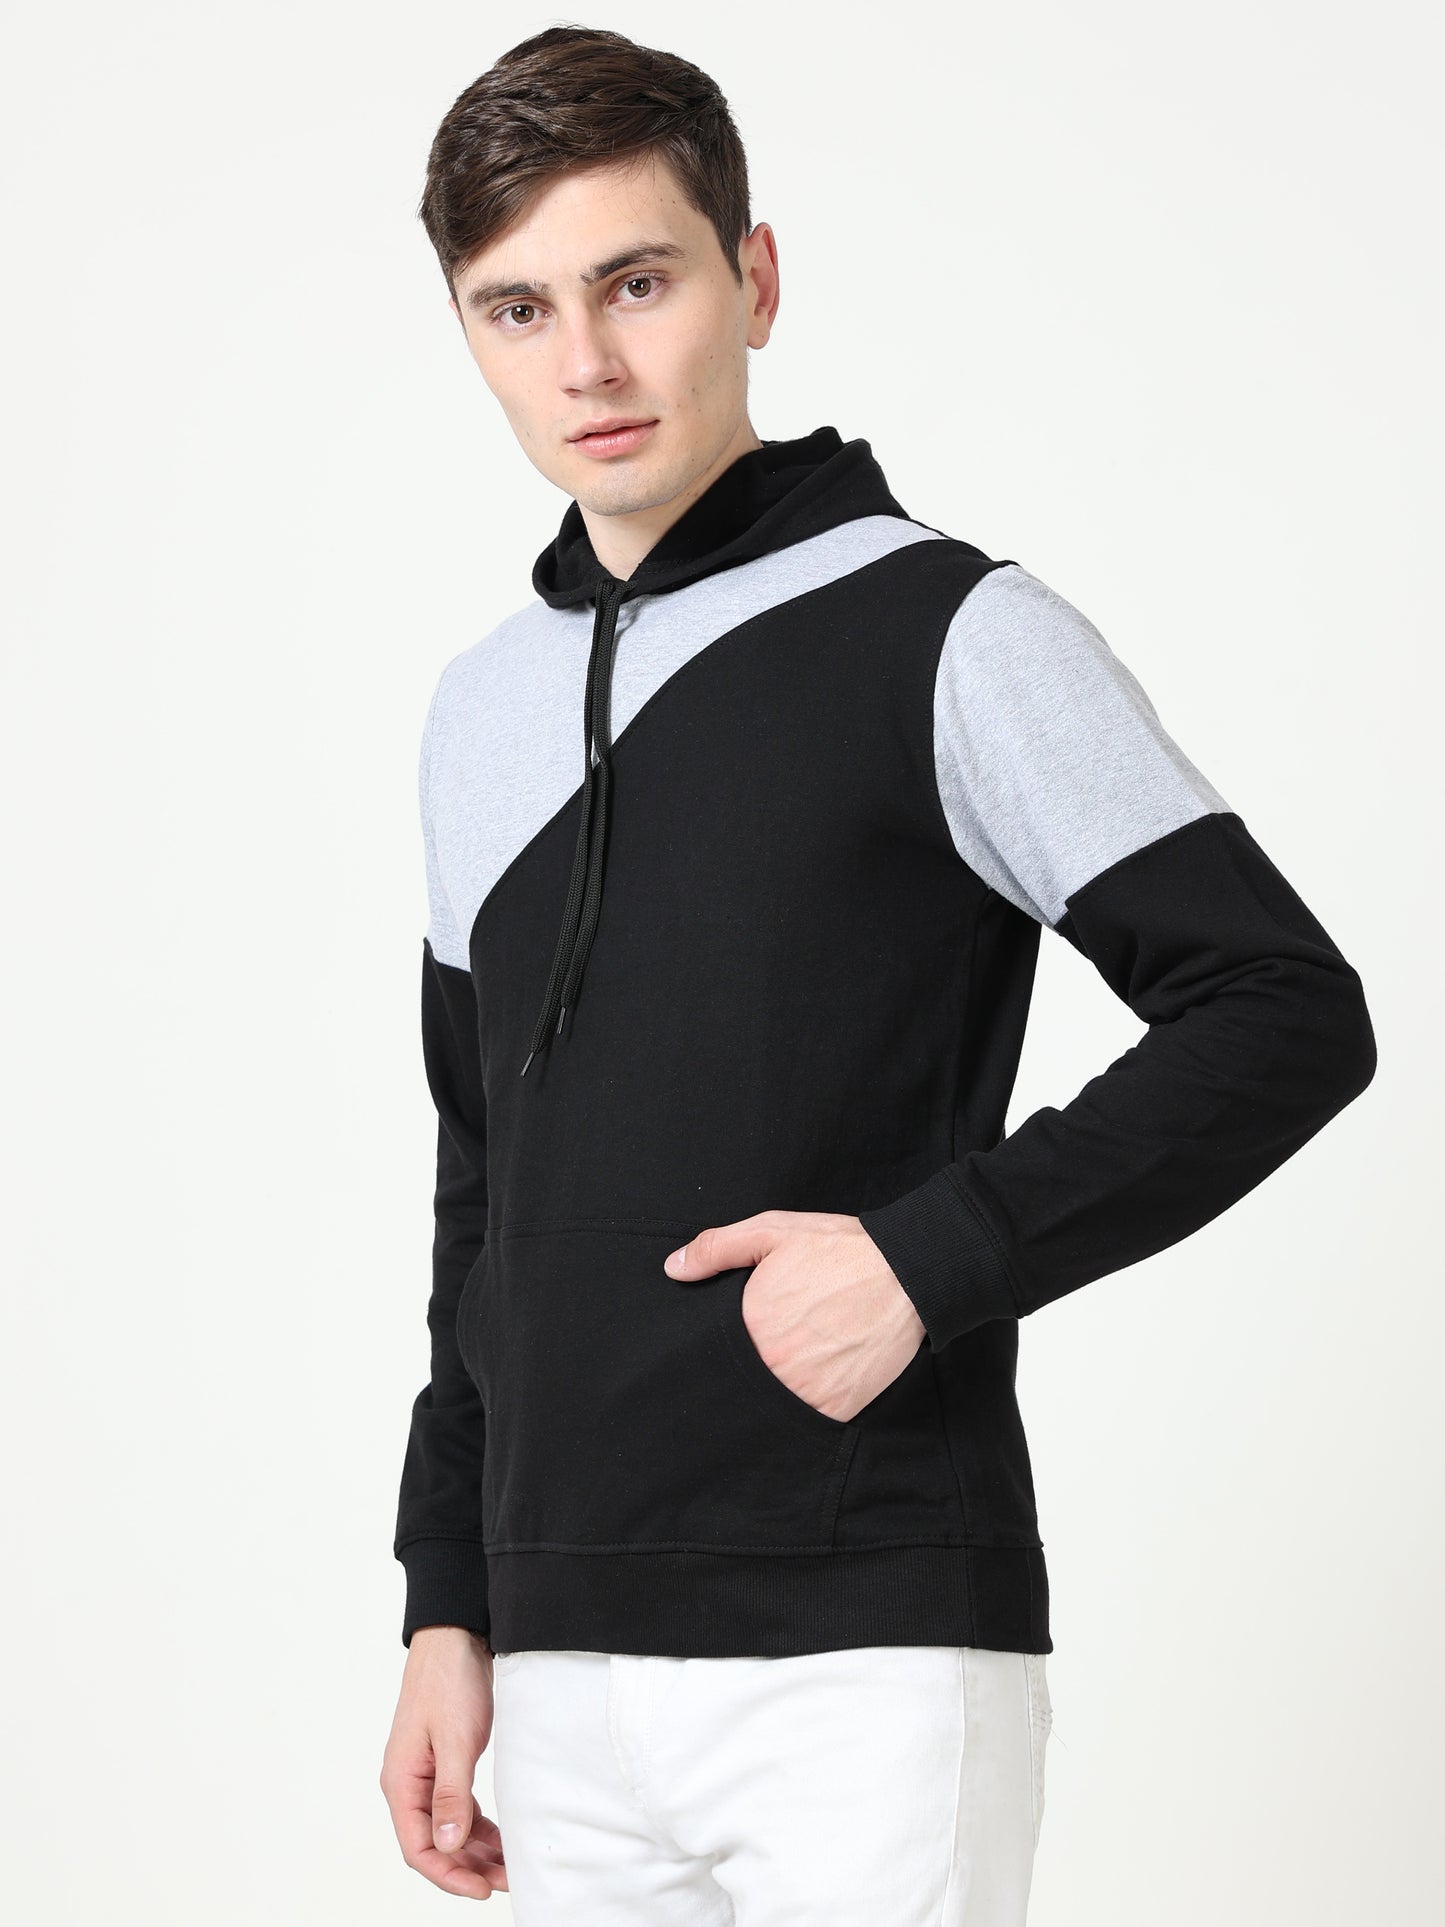 Men's Cotton Color Block Sweatshirt Greyblack Color Hoodies